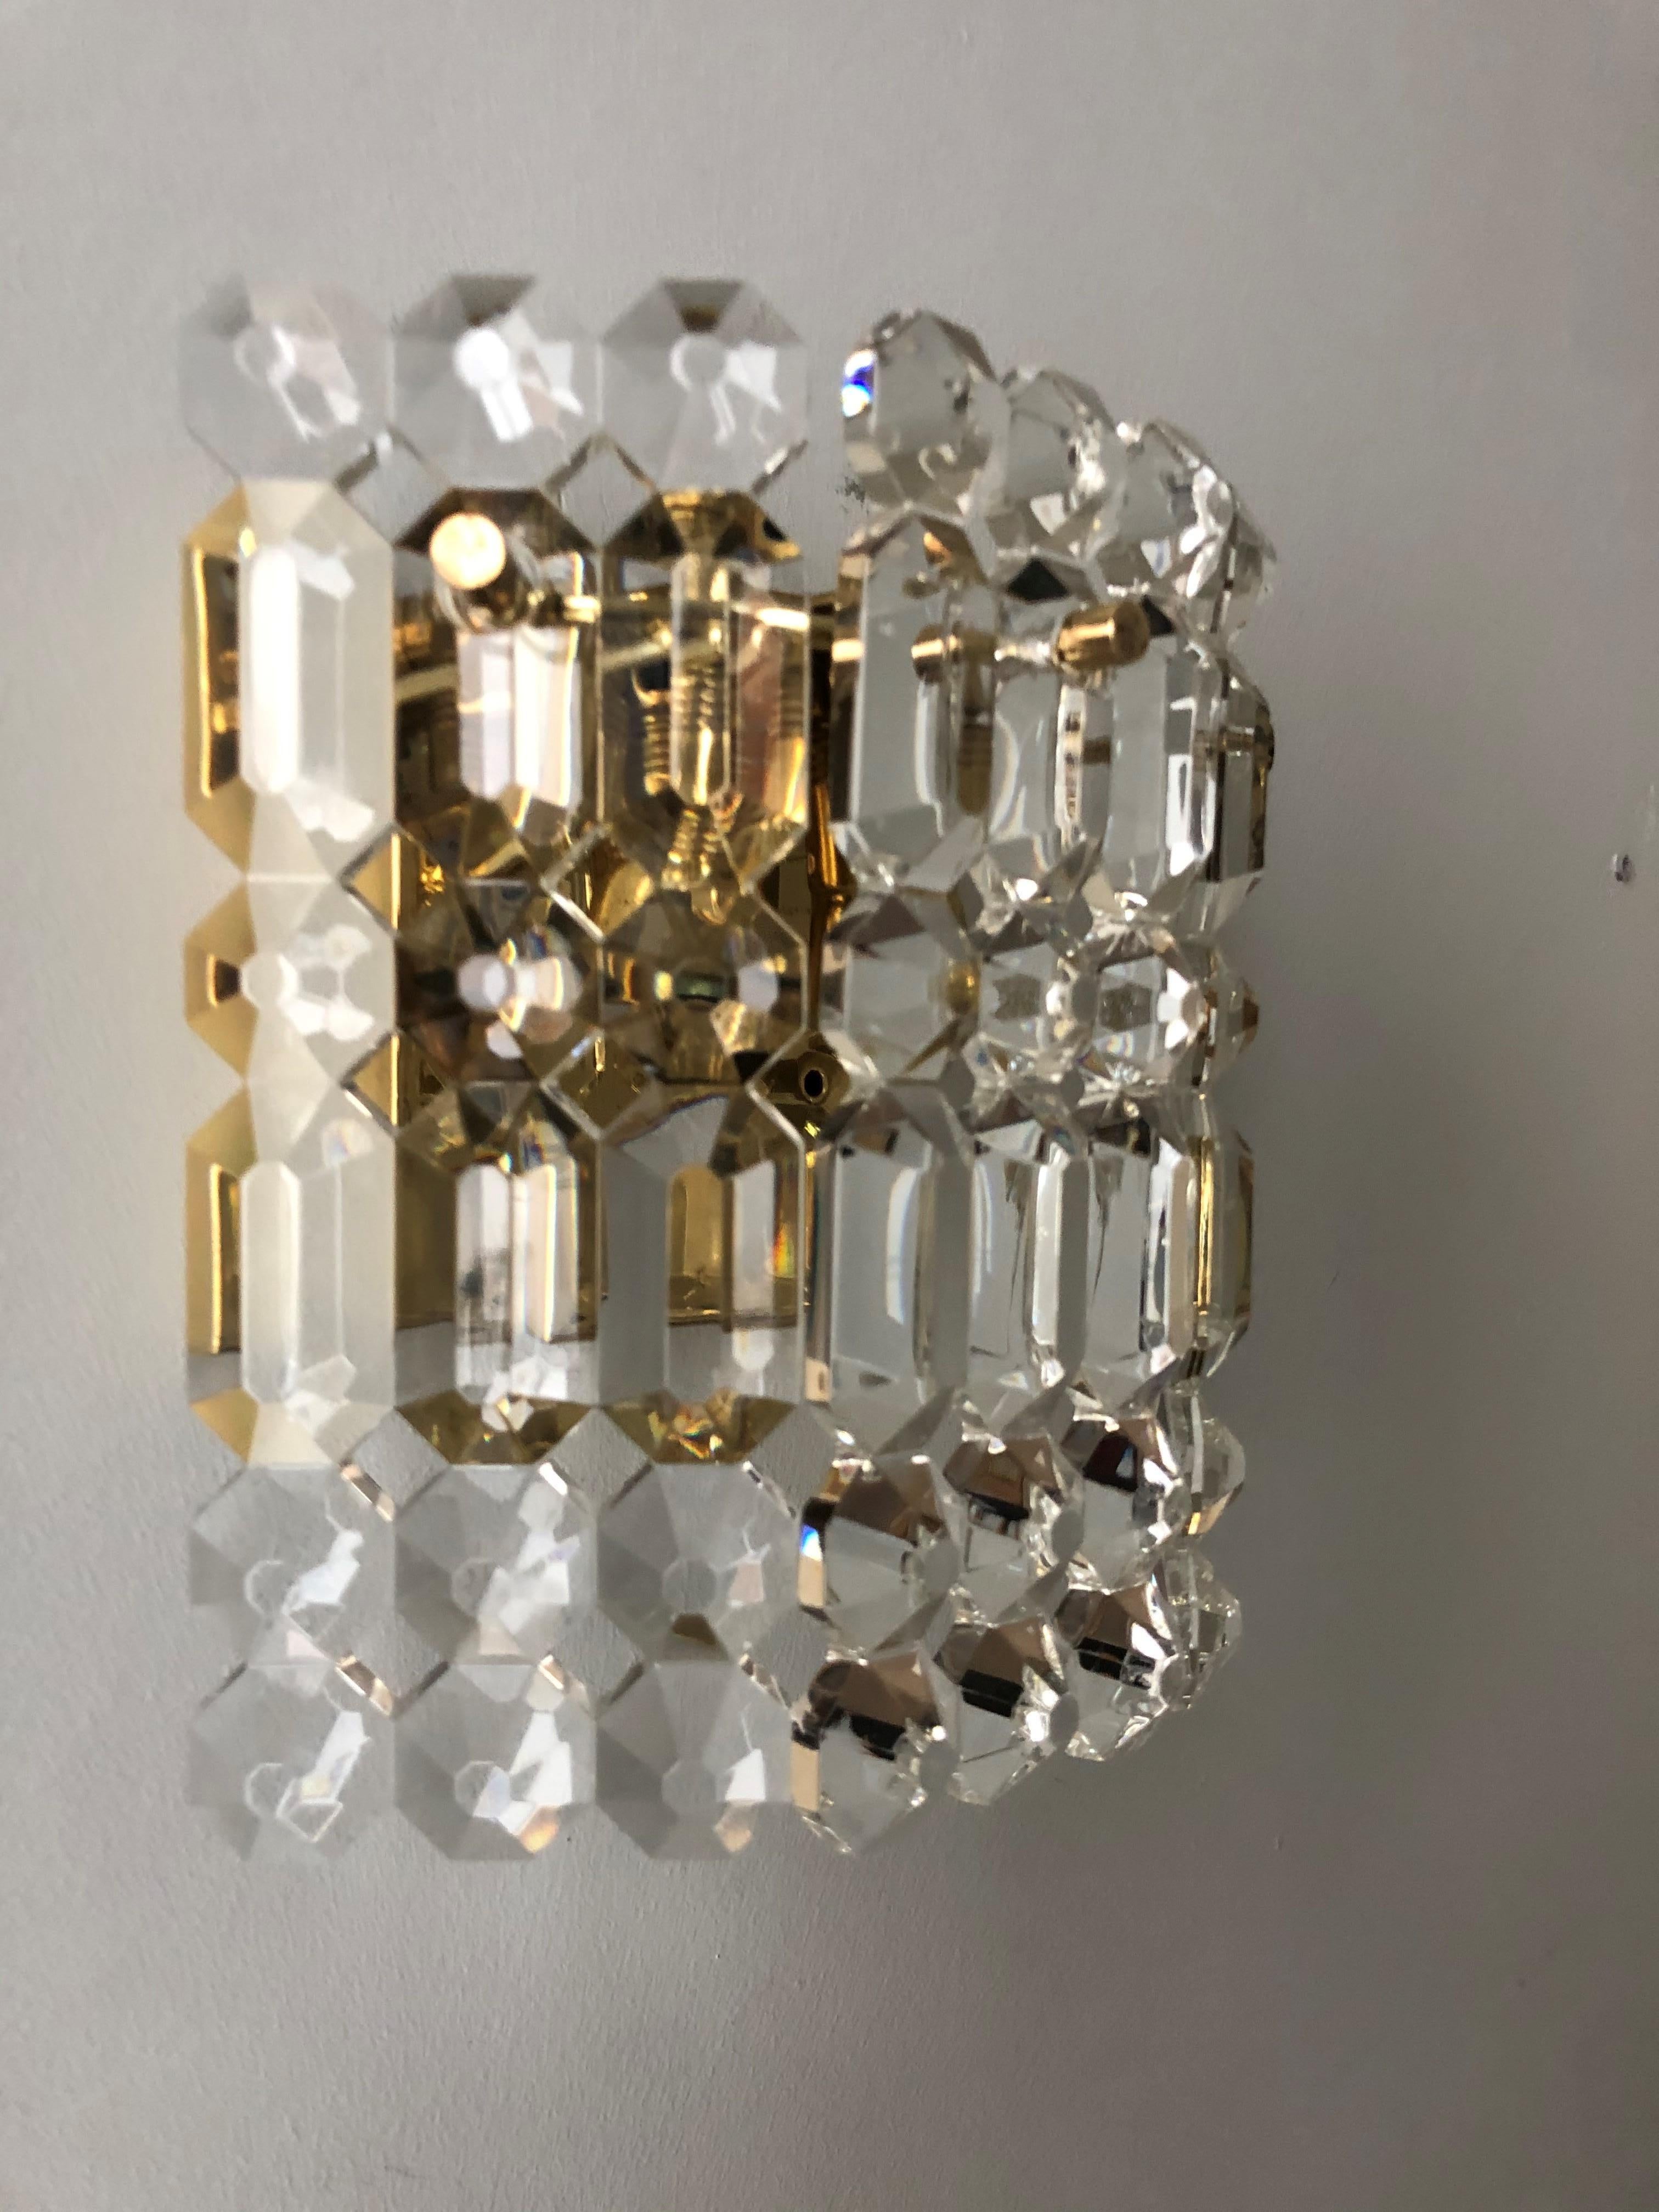 Pair of German Midcentury Crystal Wall Sconces by Kinkeldey, 1970s For Sale 1